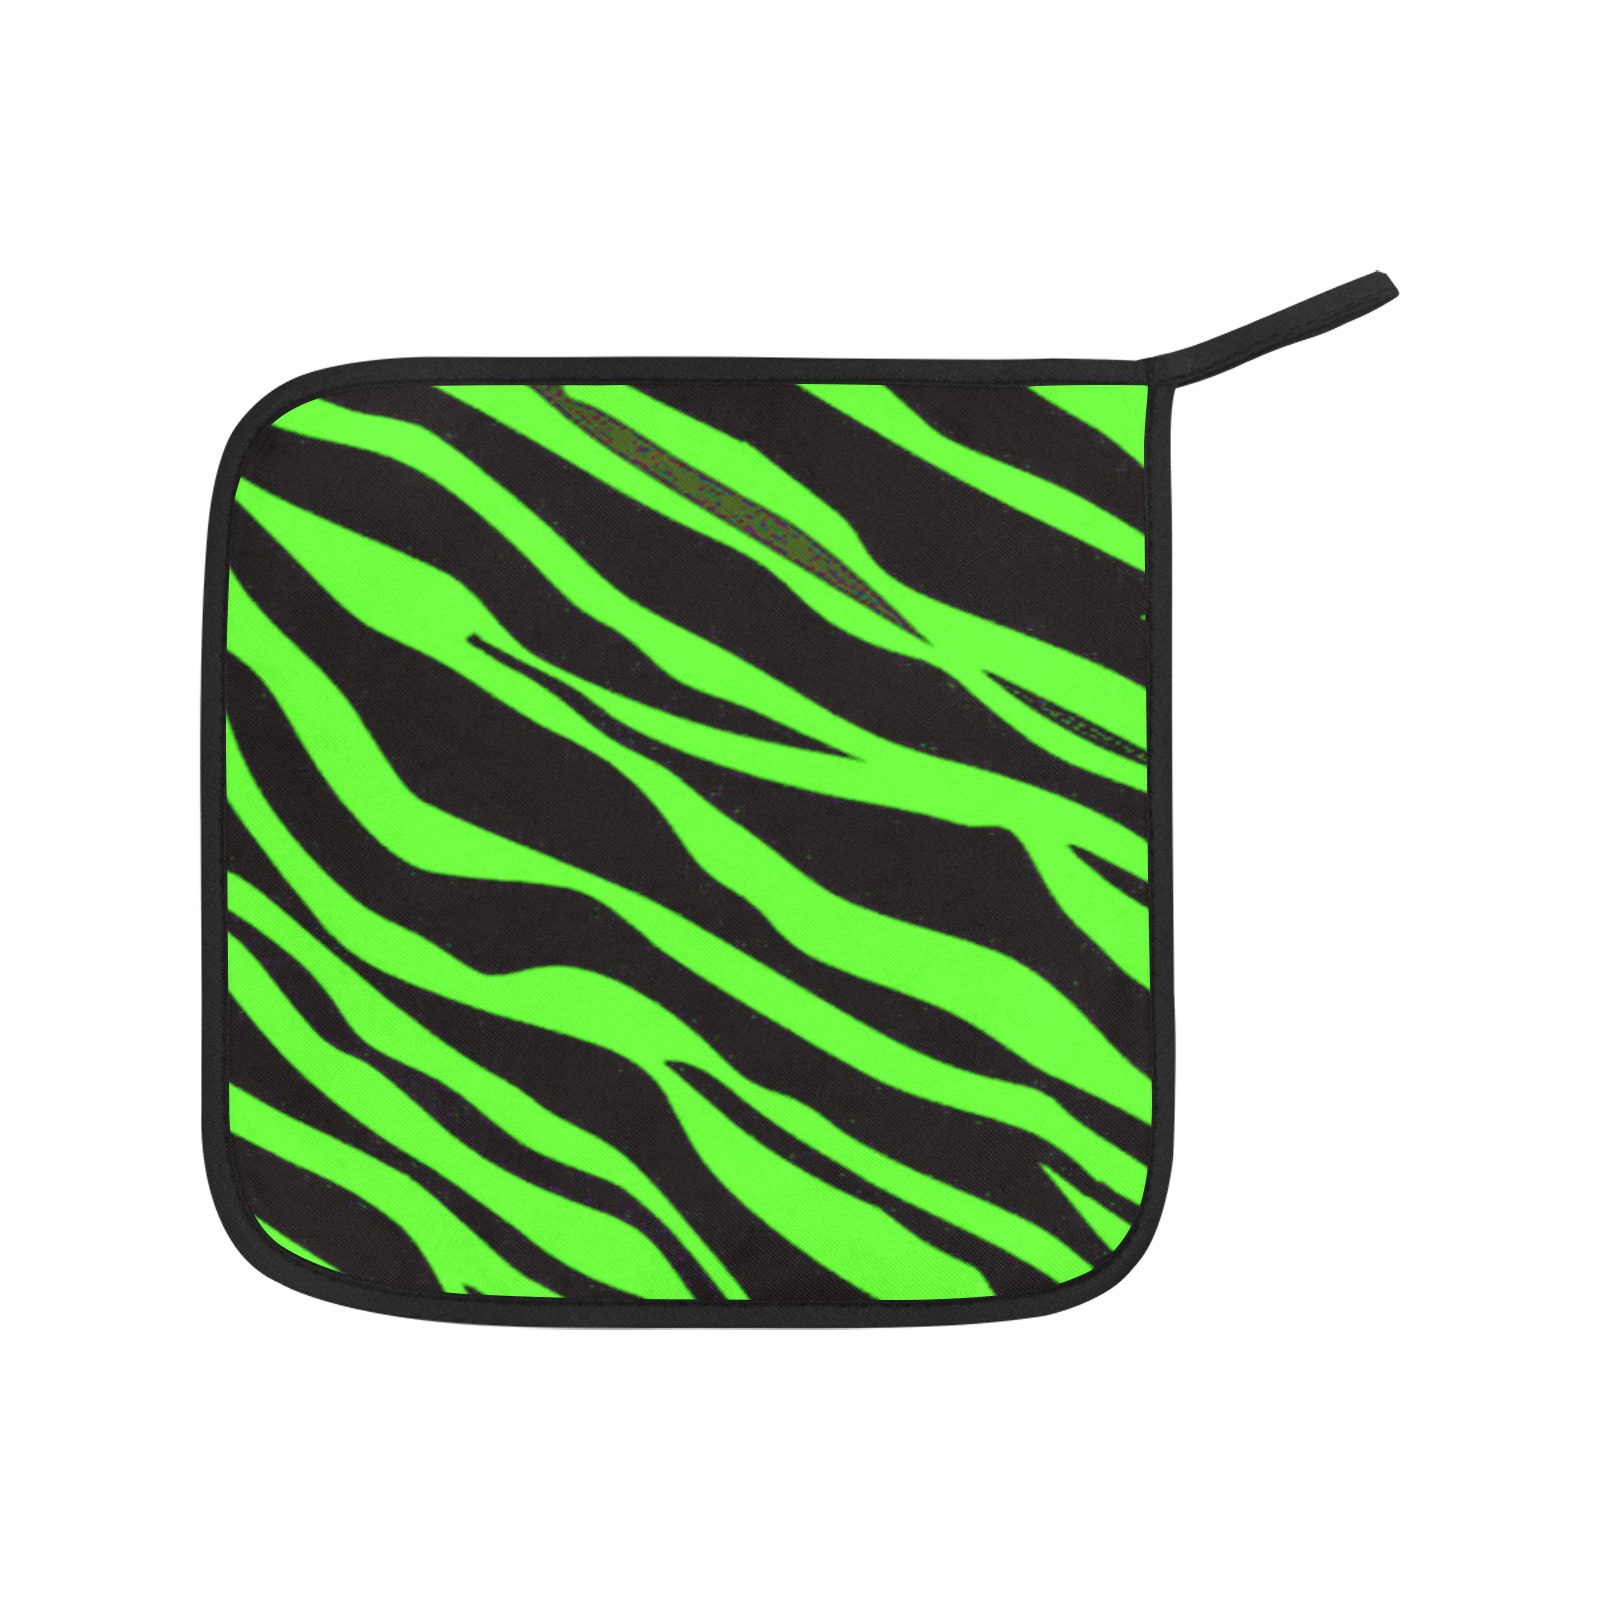 Neon Green Zebra Stripes Oven Mitt & Pot Holder